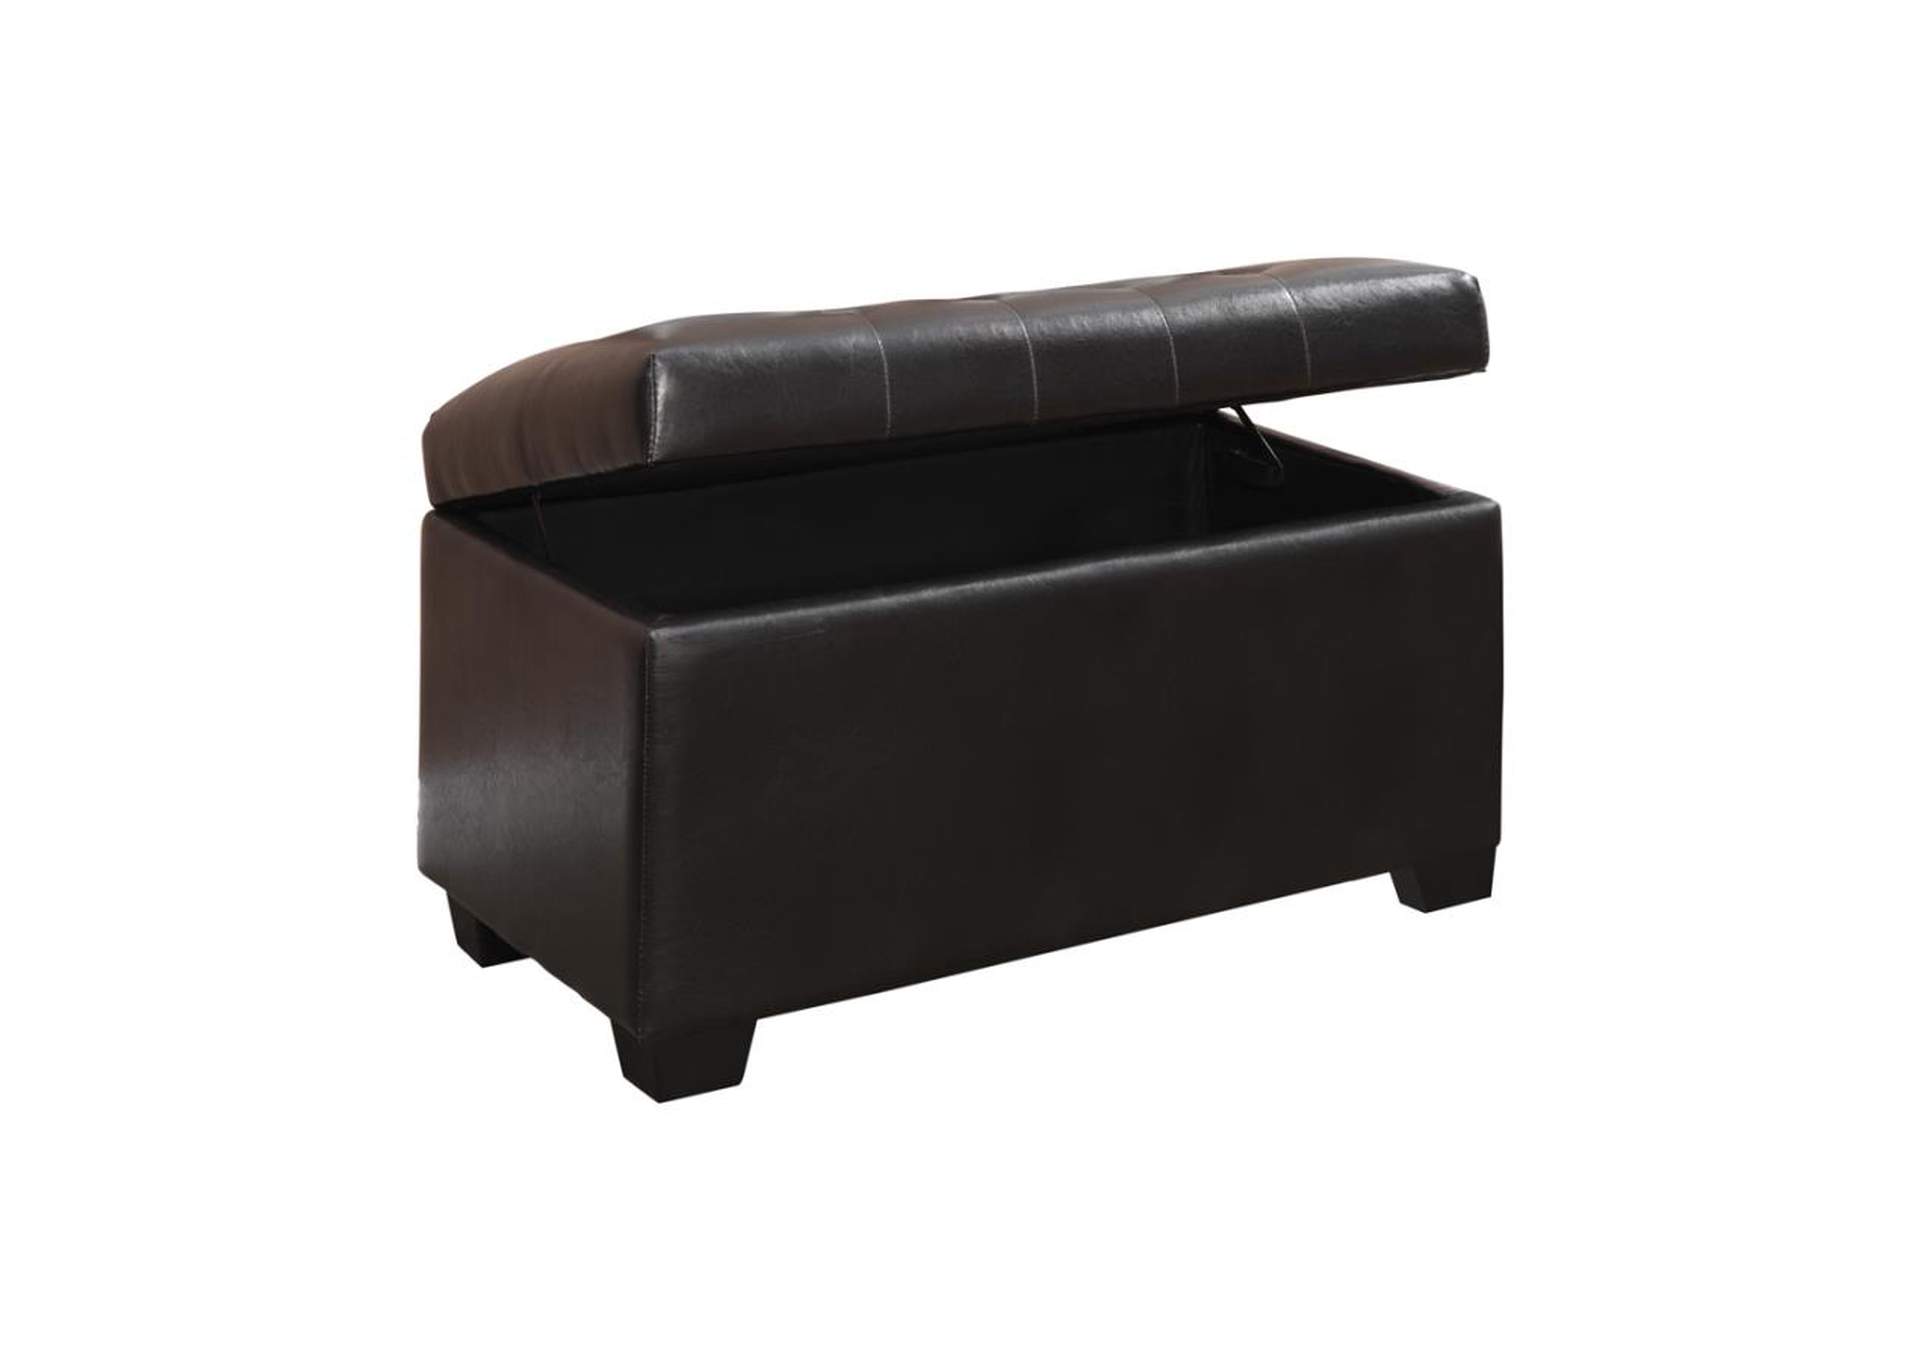 Button-Tufted Storage Ottoman Dark Brown,Coaster Furniture